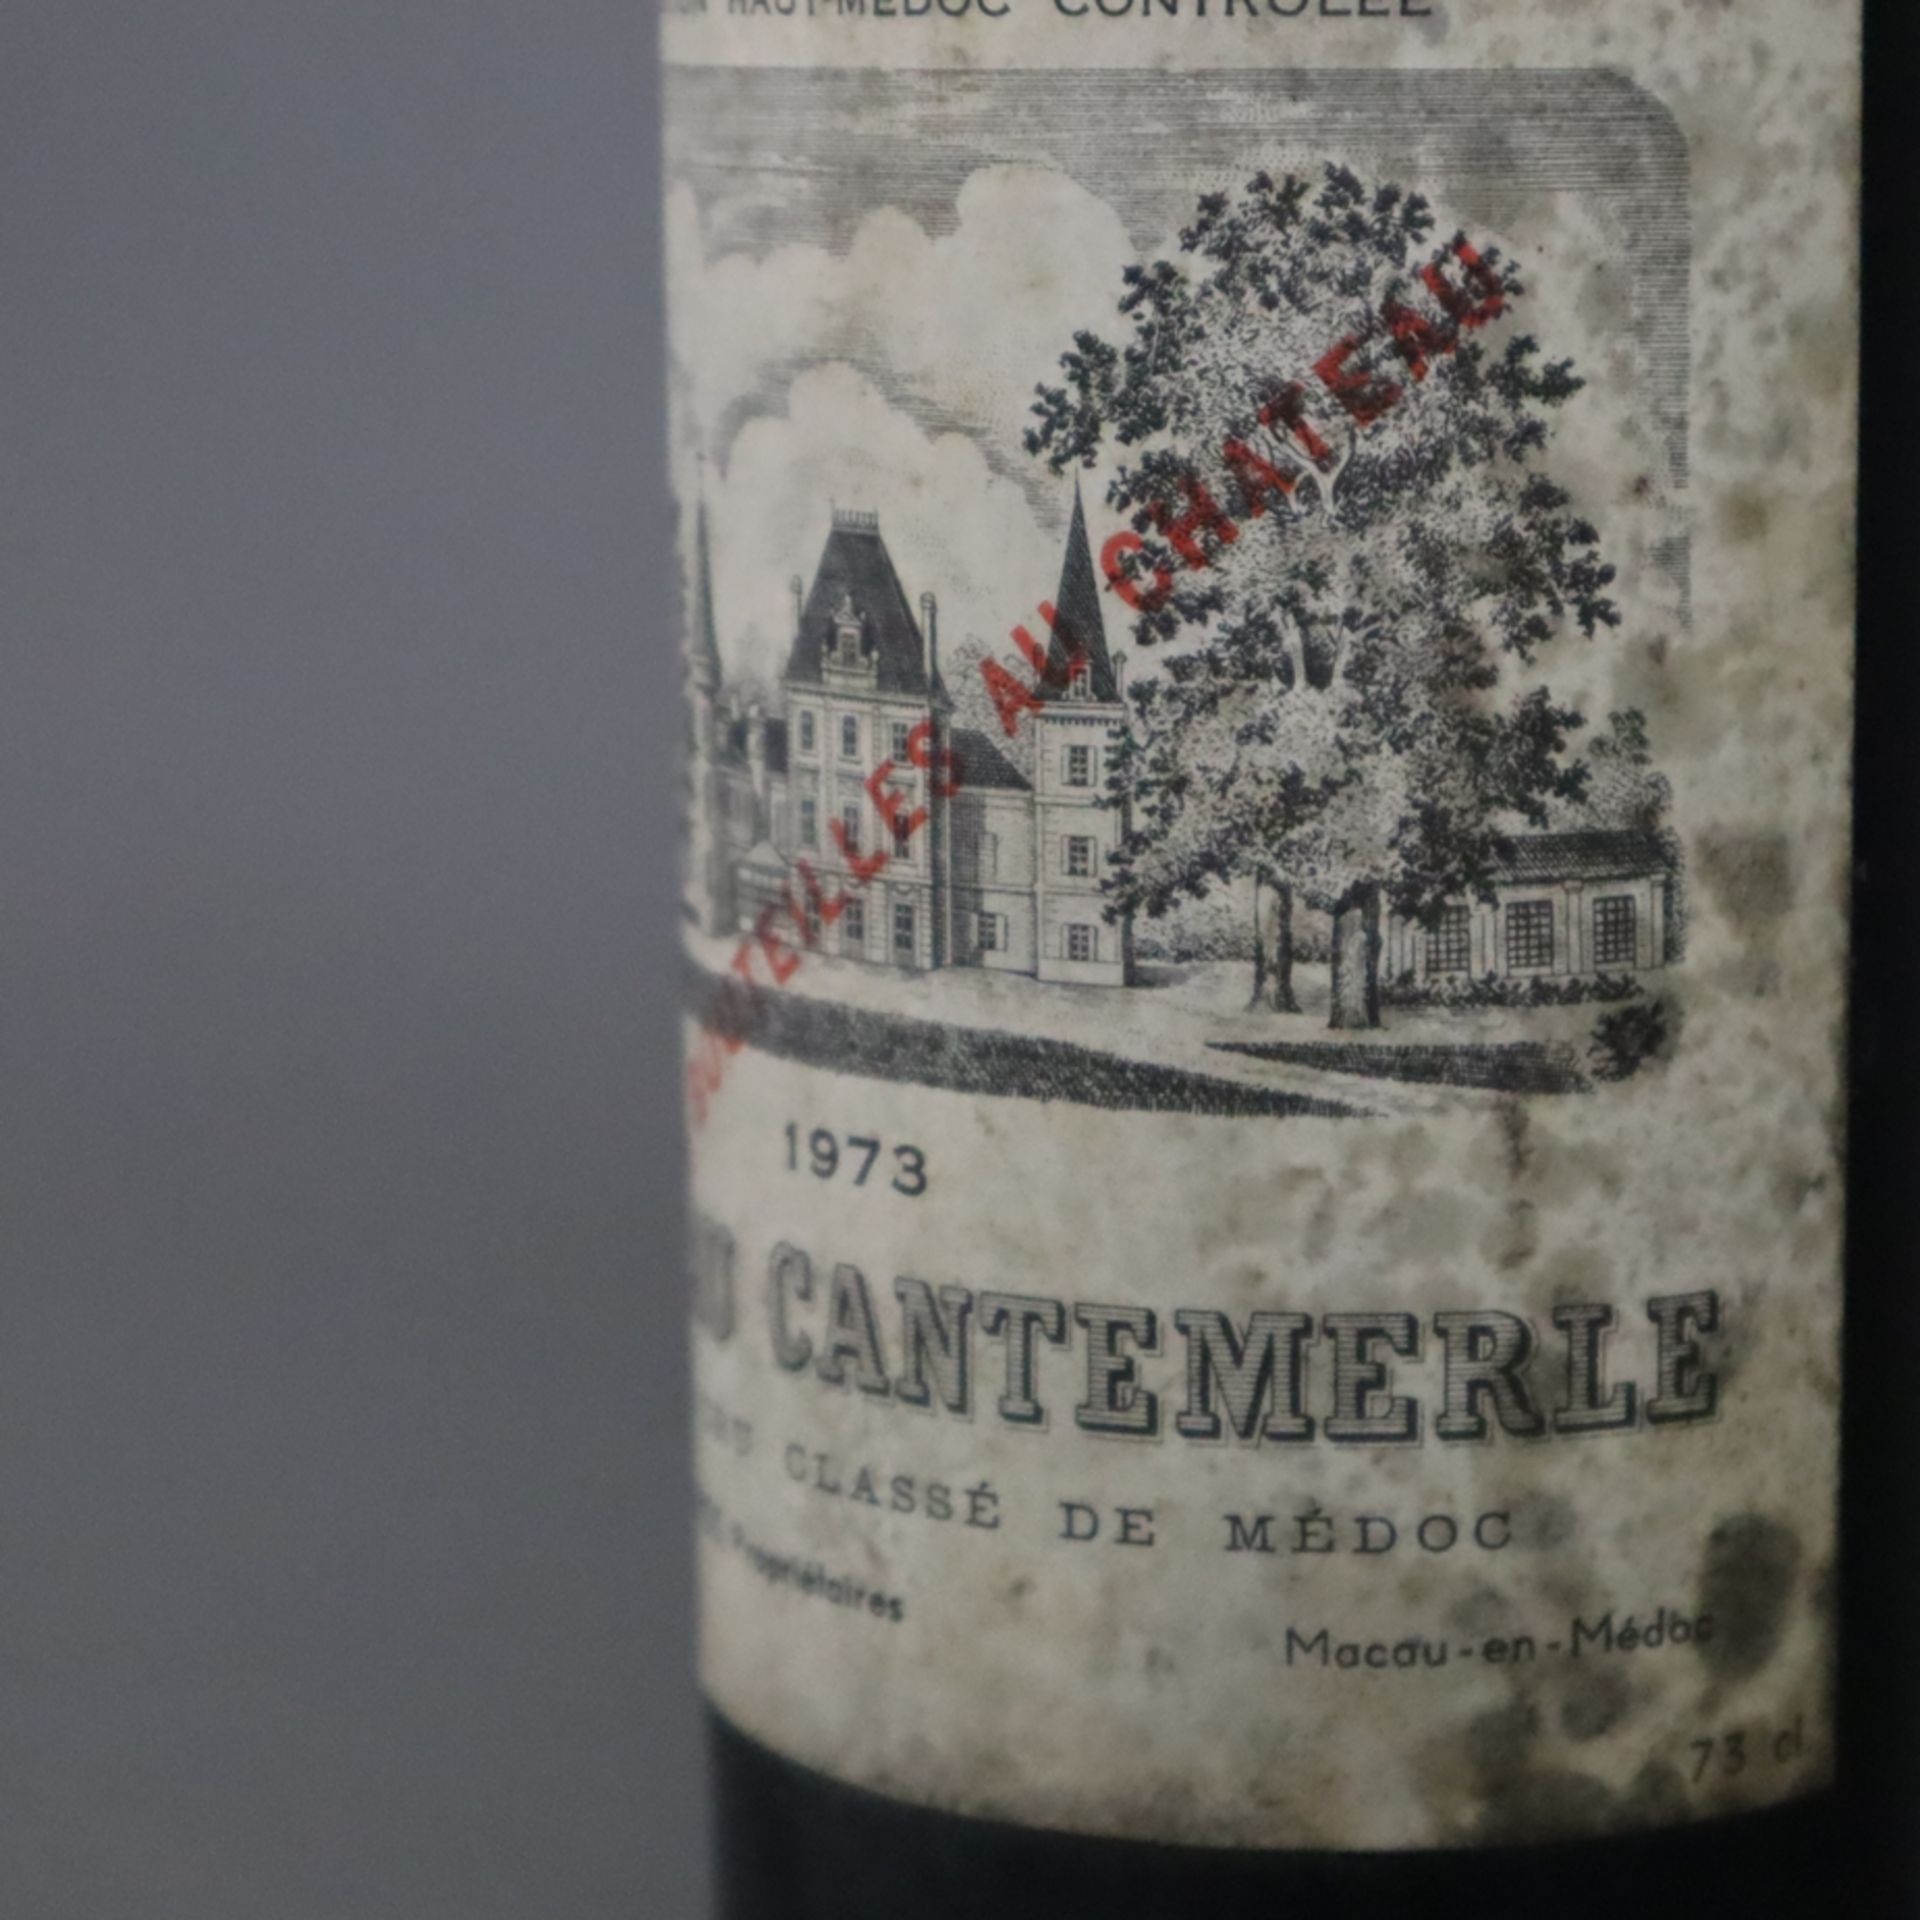 Wein - CHÂTEAU CANTEMERLE 1973, Grand Cru Classé de Médoc, 0,7 Liter, Etikett verschmutzt - Bild 6 aus 6